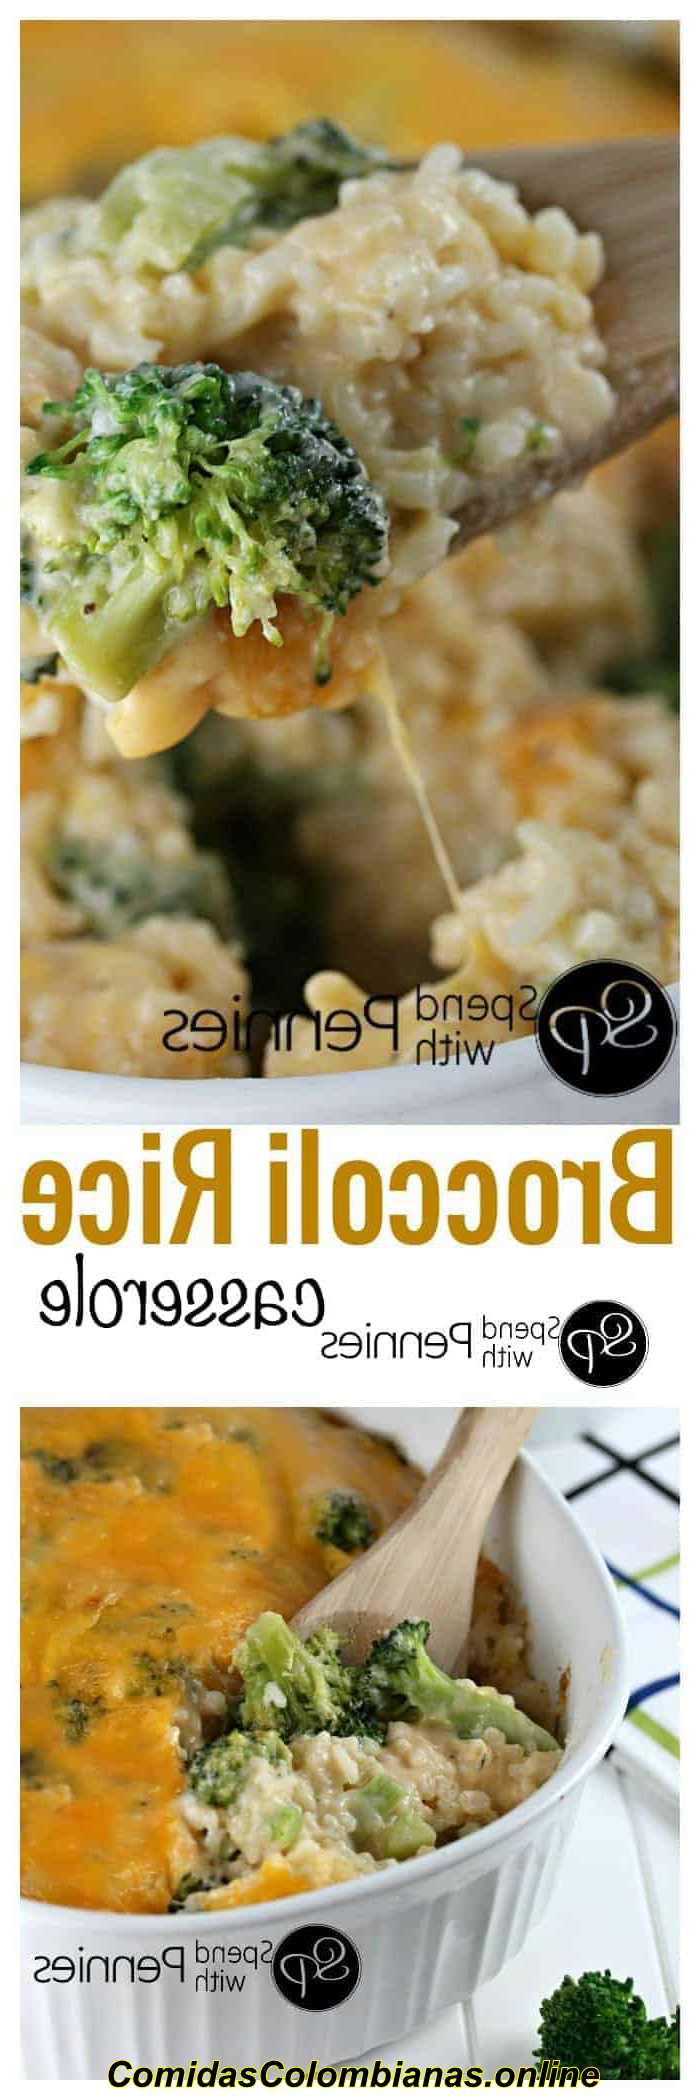 imagen superior: se sirve una cazuela de arroz con brócoli. Imagen inferior: cazuela de arroz con brócoli preparada con escritura.